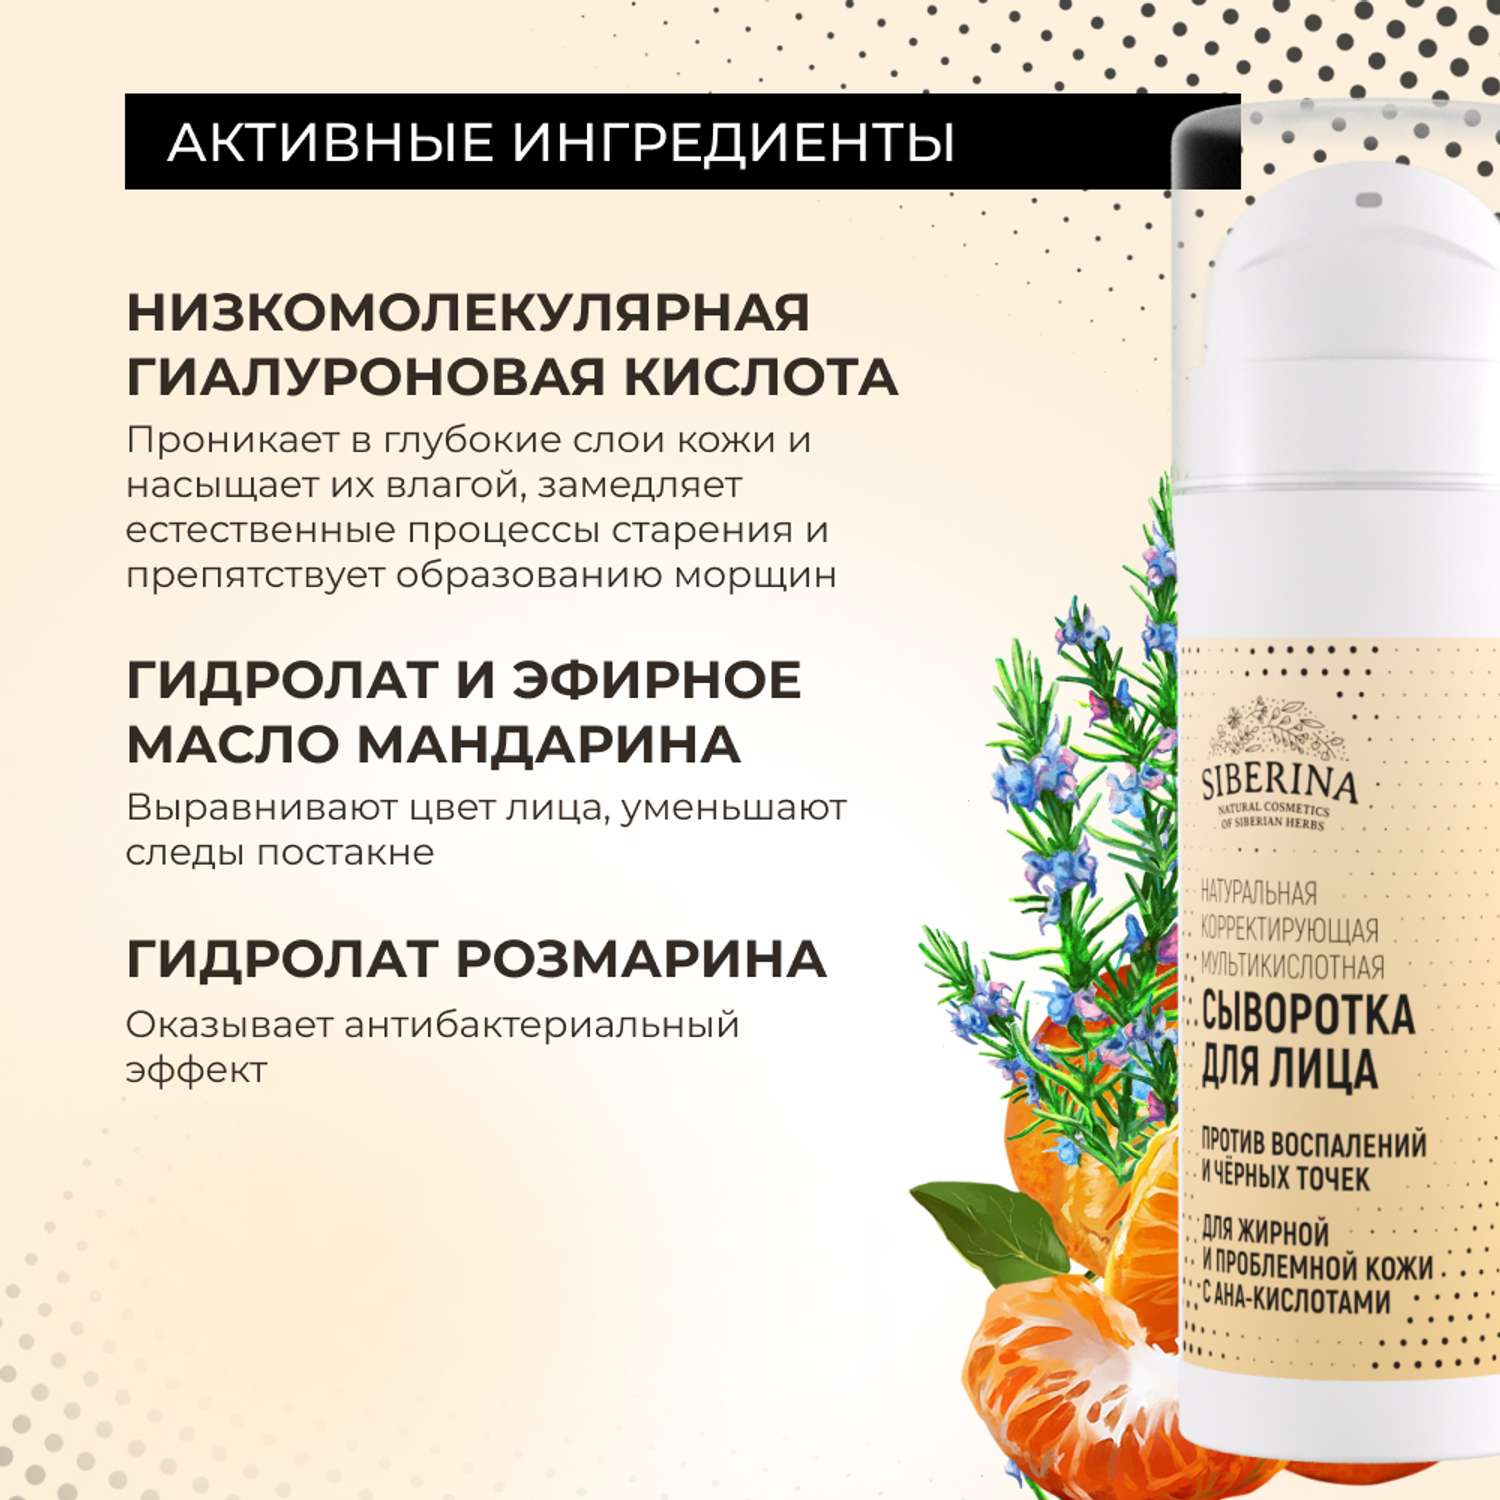 Сыворотка для лица Siberina натуральная для жирной и проблемной кожи c AHA-кислотами 30 мл - фото 6